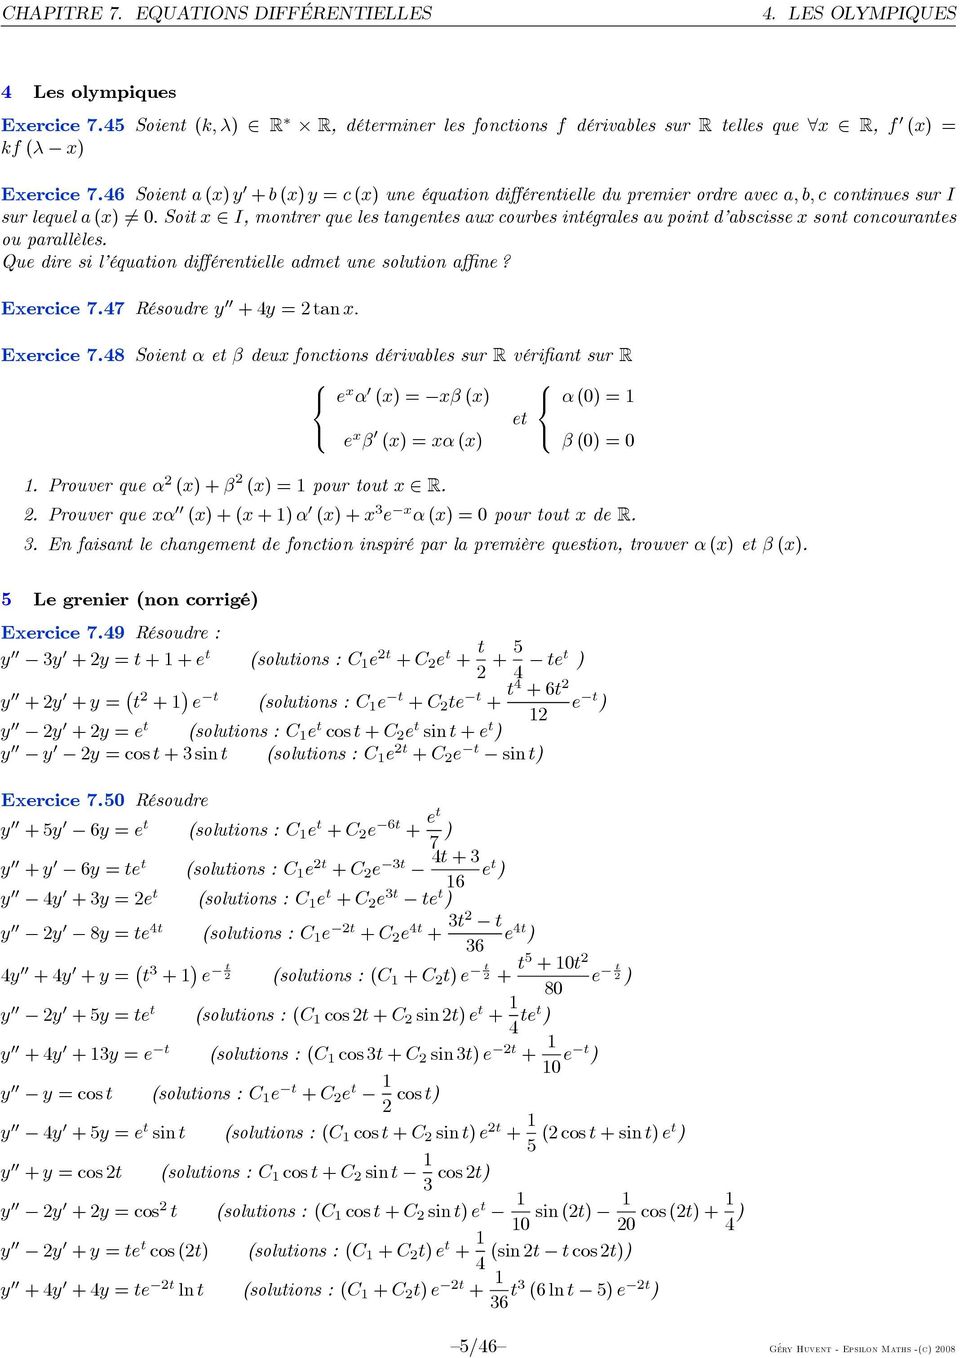 Soitx I,montrerquelestangentesauxcourbesintégralesaupointd abscissexsontconcourantes ou parallèles. Que dire si l équation différentielle admet une solution affine? Exercice7.47 Résoudrey +4y=tanx.